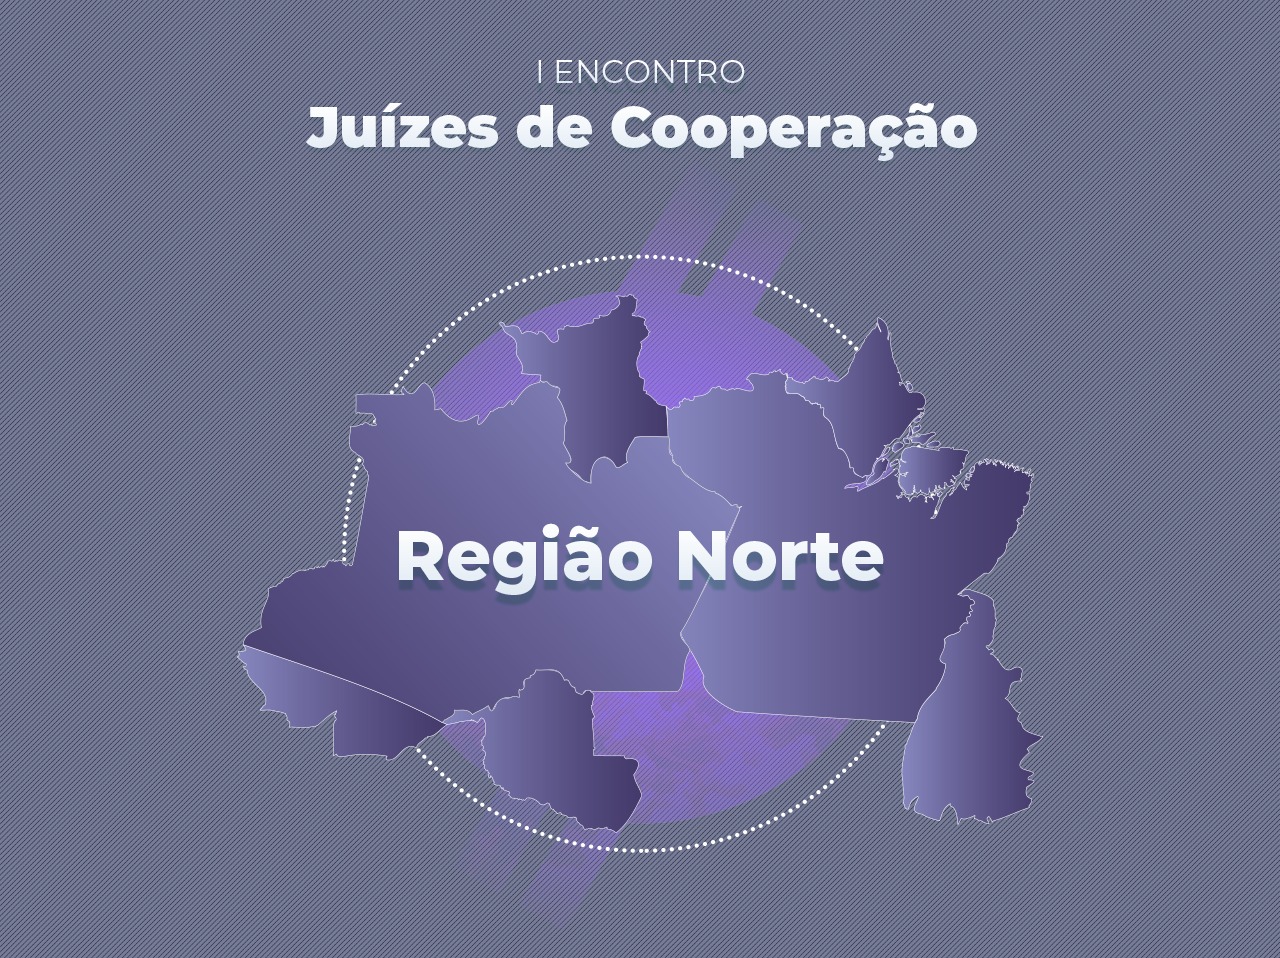  Imagem colorida contém banner de divulgação do evento  “I Encontro de Juízes de Cooperação da Região Norte”. 